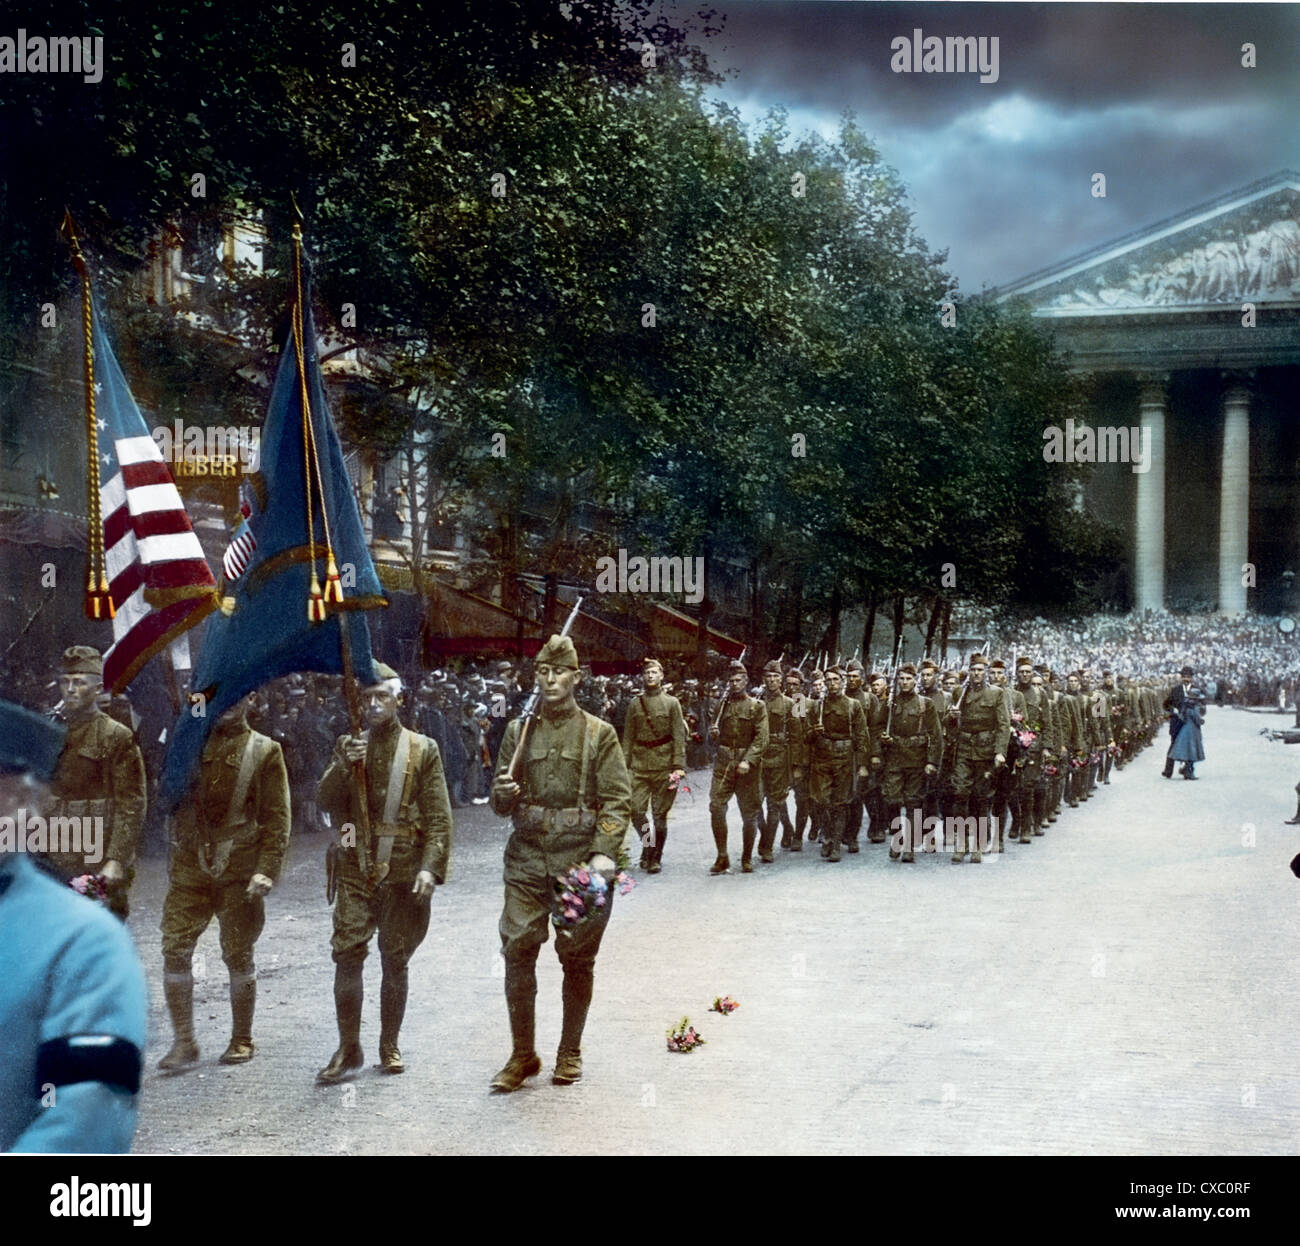 Photo colorisée des soldats américains marchant sur la place de la Madeleine lors d'un défilé de la Journée de l'armistice, Paris, France, le 11 novembre 1918. Certains soldats tiennent des fleurs. (Photo de Burton Holmes) Banque D'Images